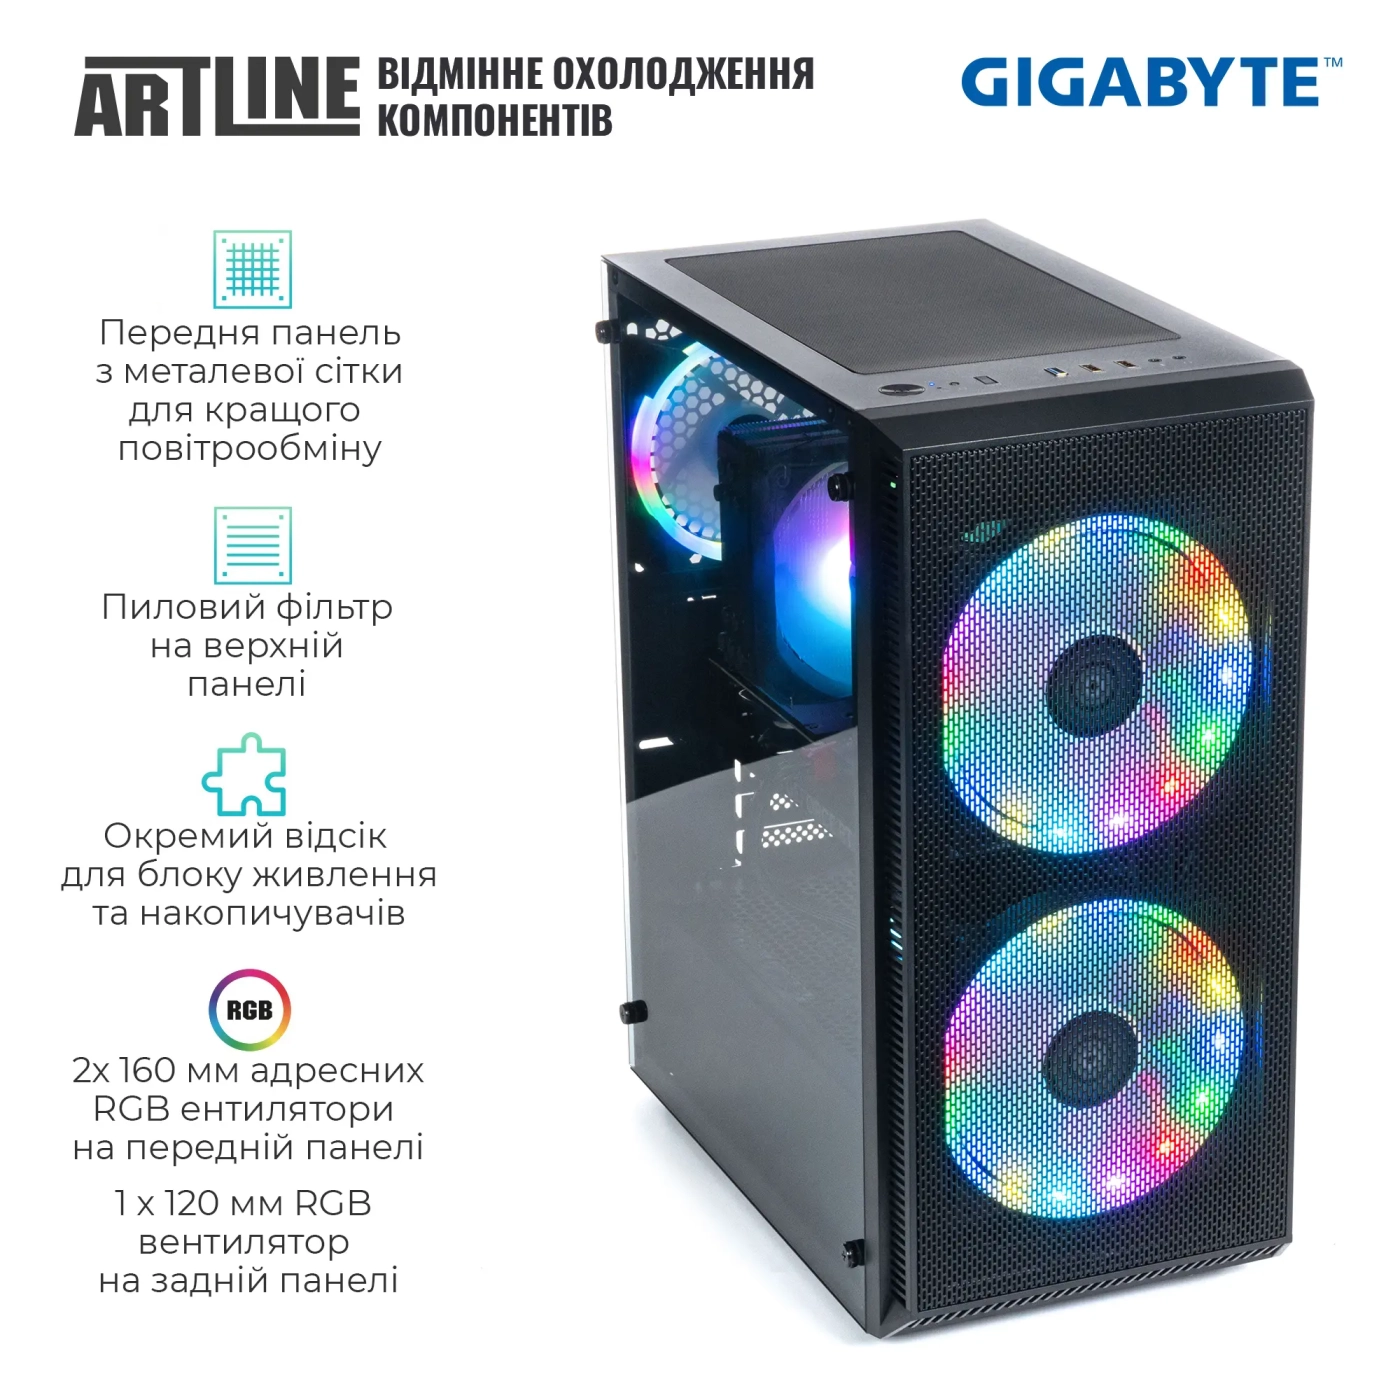 Купить Компьютер ARTLINE Gaming X81v30GGB GIGABYTE Special Edition (X81v30GGB) - фото 3